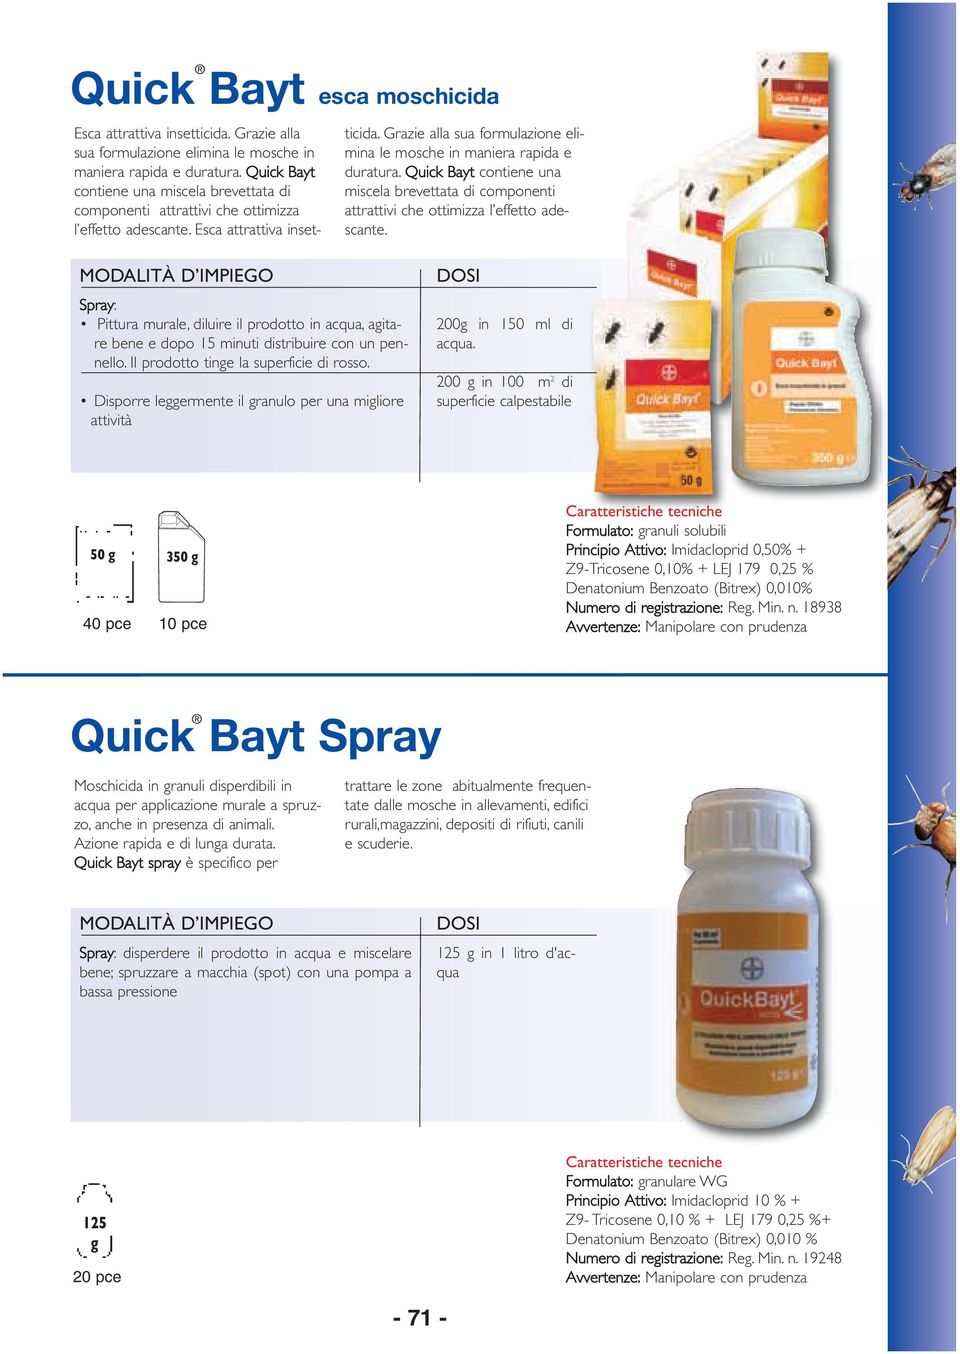 Grazie alla sua formulazione elimina le mosche in maniera rapida e duratura. Quick Bayt contiene una miscela brevettata di componenti attrattivi che ottimizza l effetto adescante.